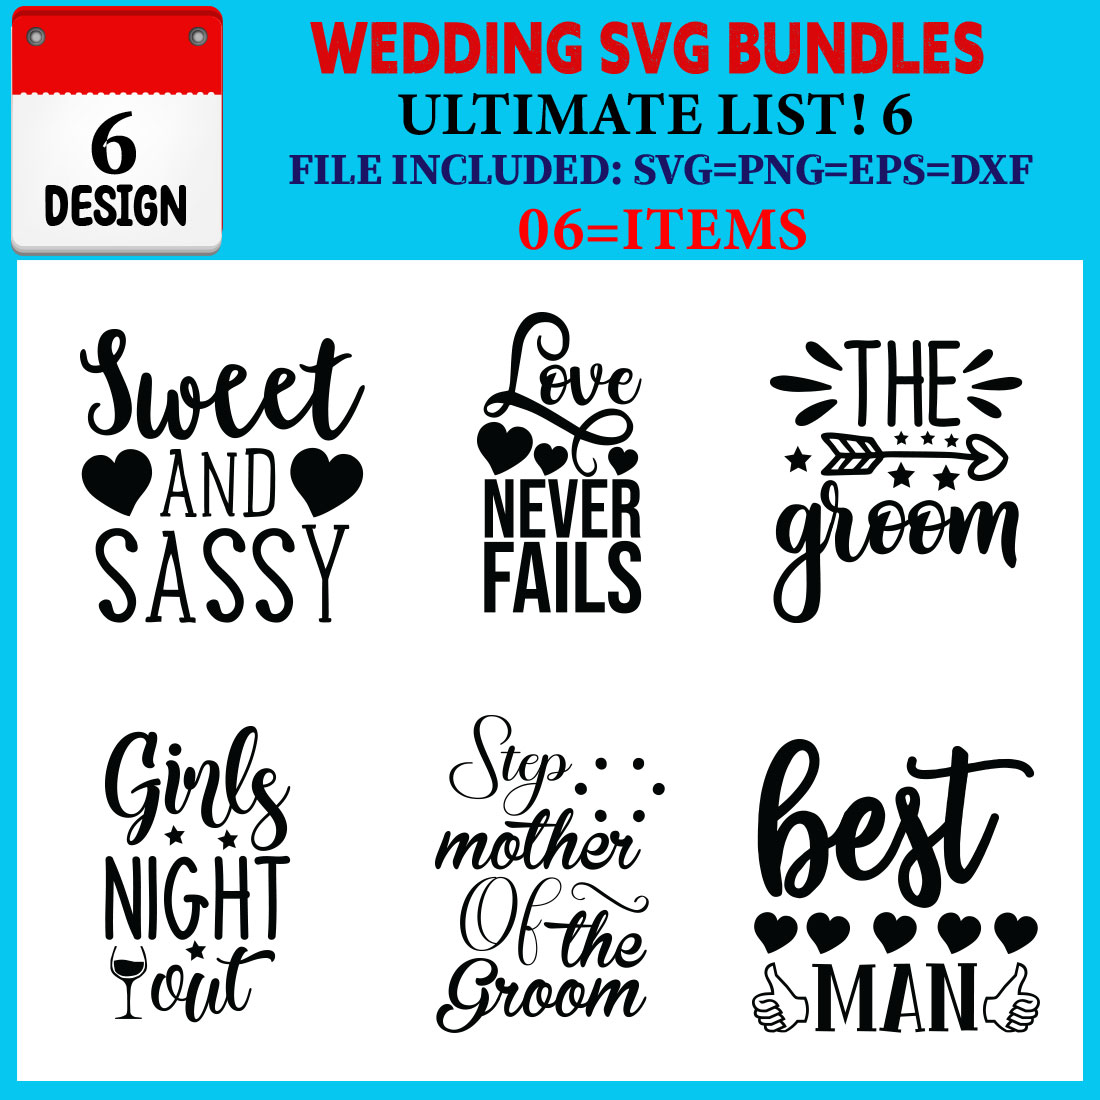 Wedding SVG T-shirt Design Bundle Vol-07 cover image.